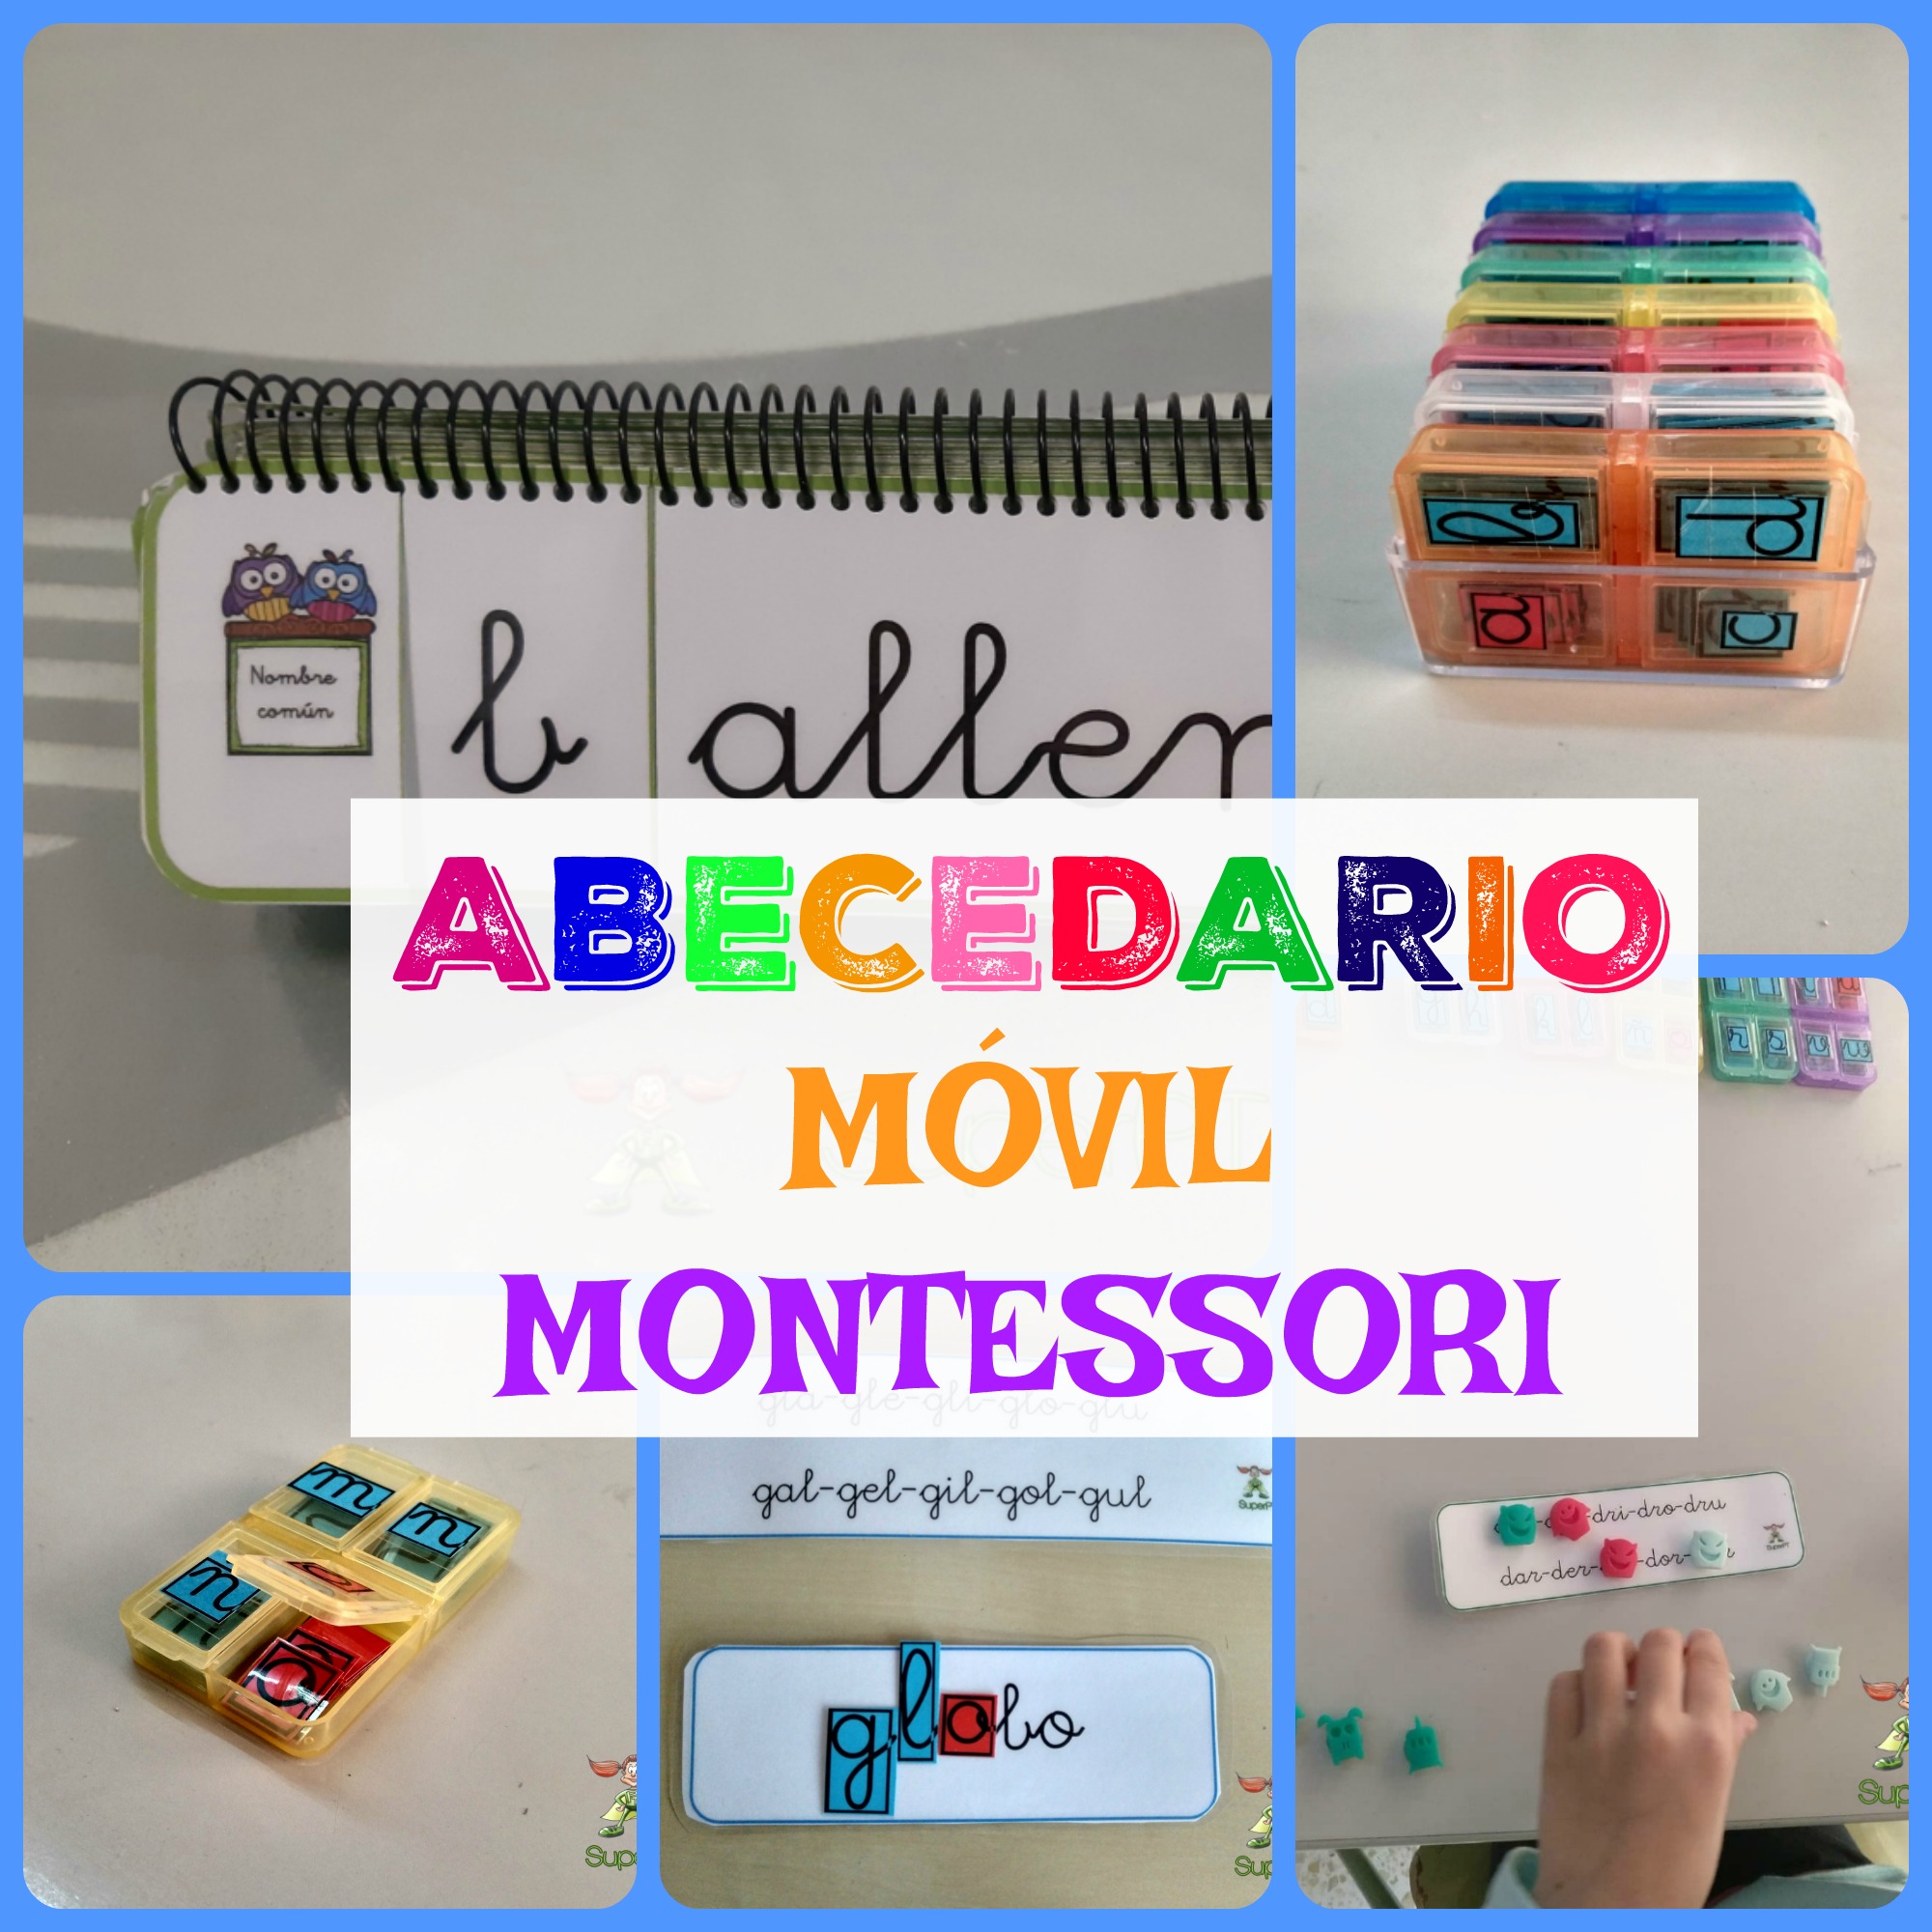 Abecedario Movil Montessori Infosal